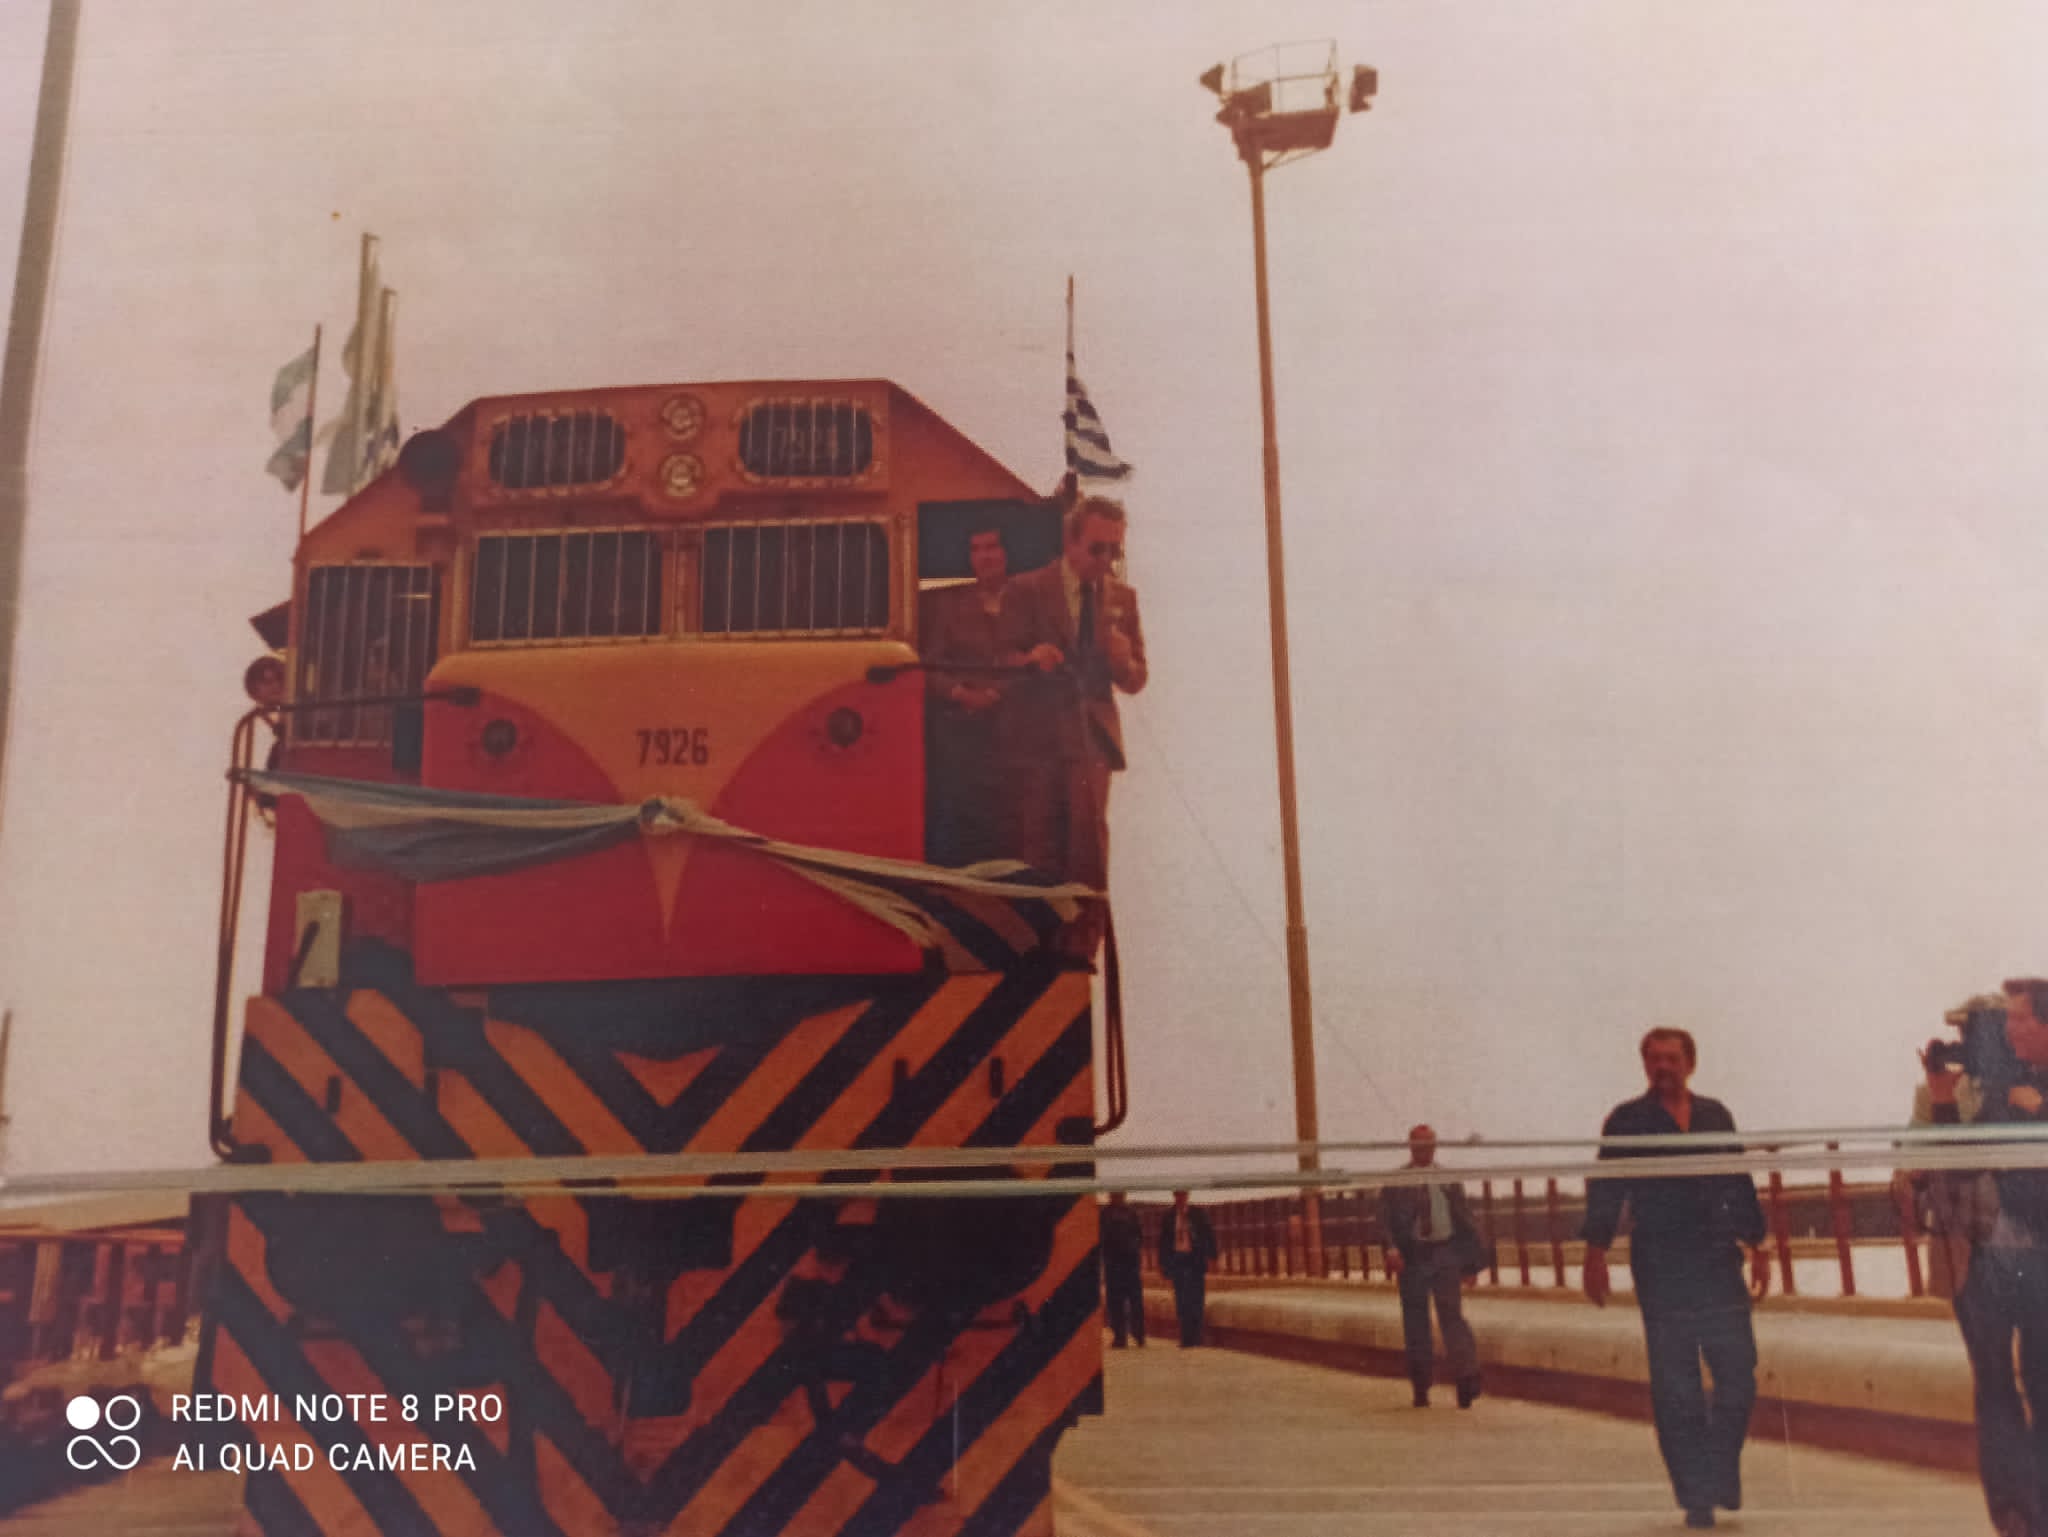 Descarga GRATIS: Ferrocarril Midland de Buenos Aires - archivo